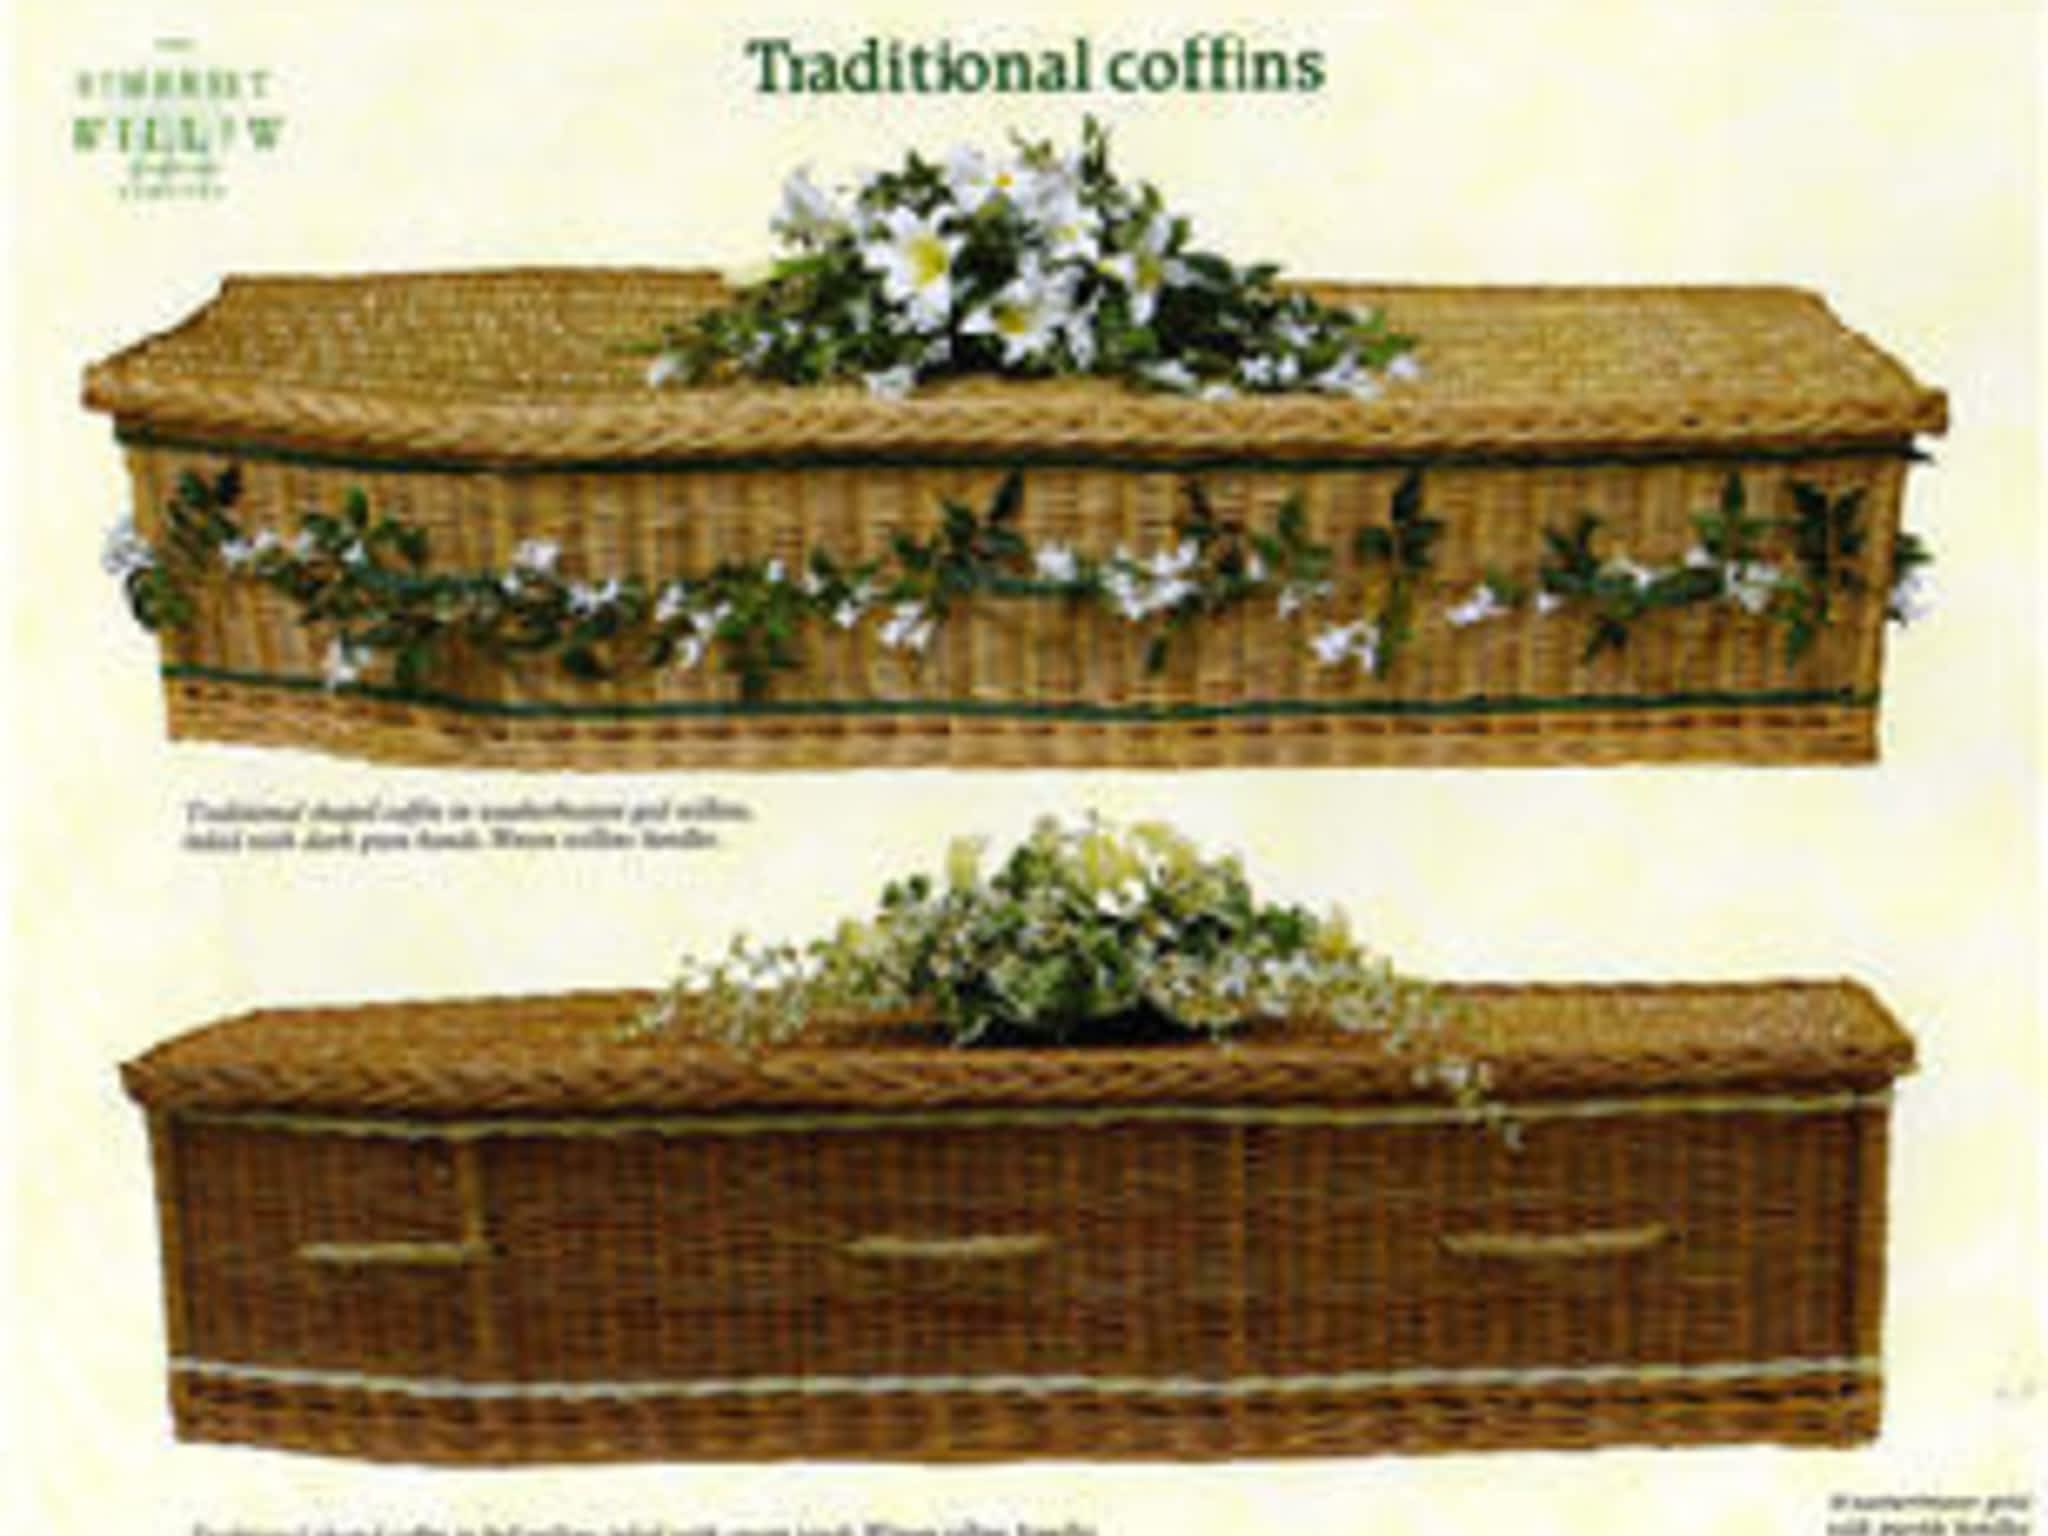 photo Ogden Funeral Homes